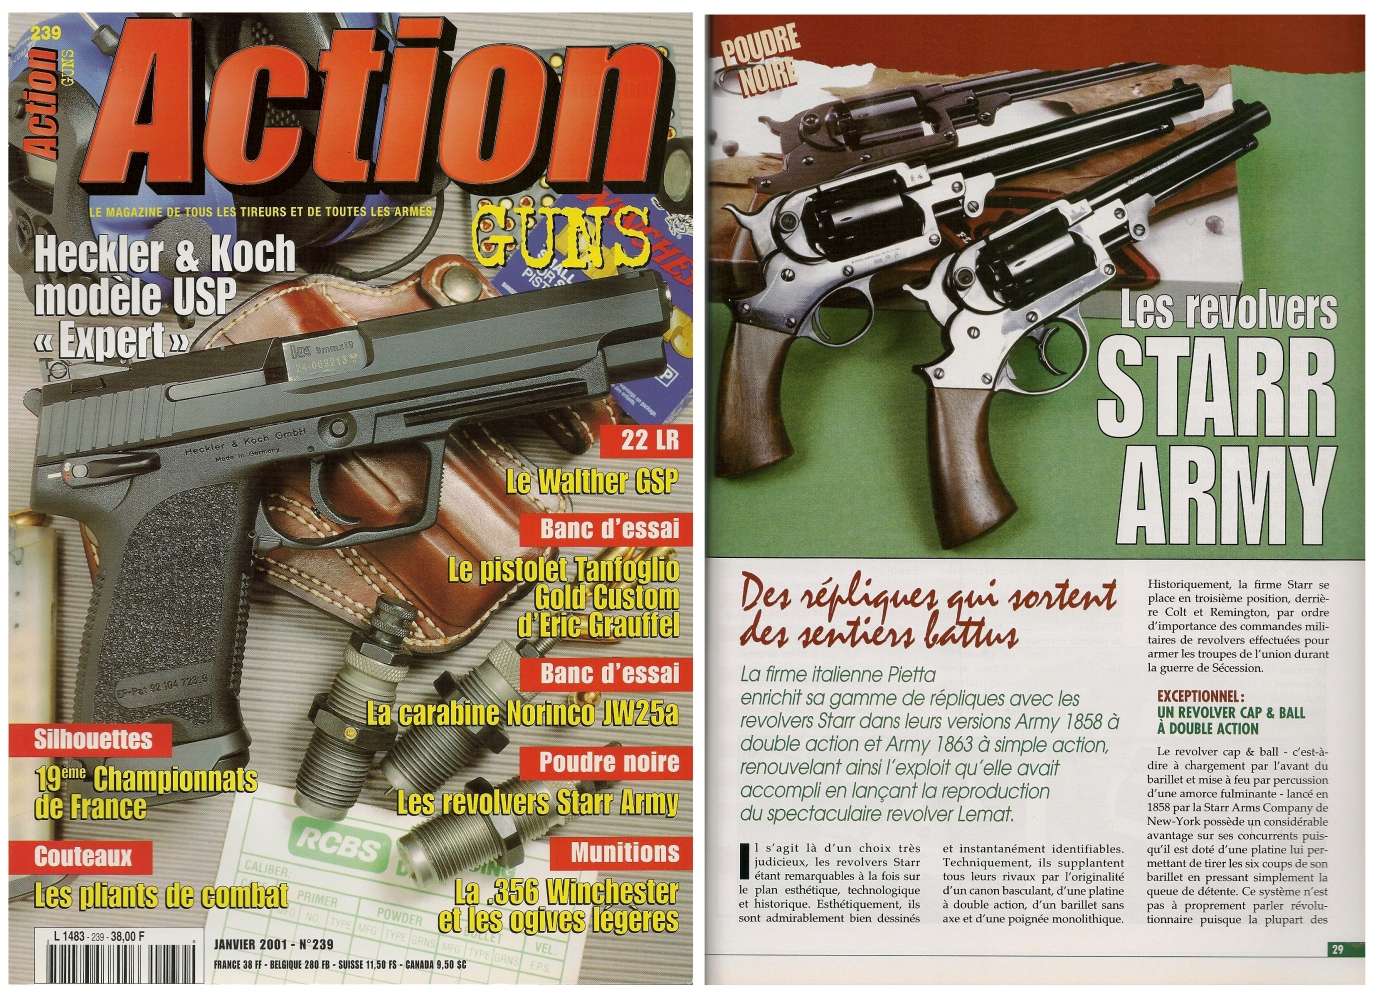 Le banc d'essai des répliques des revolvers Starr Army a été publié sur 6 pages dans le magazine Action Guns n° 239 (janvier 2001).